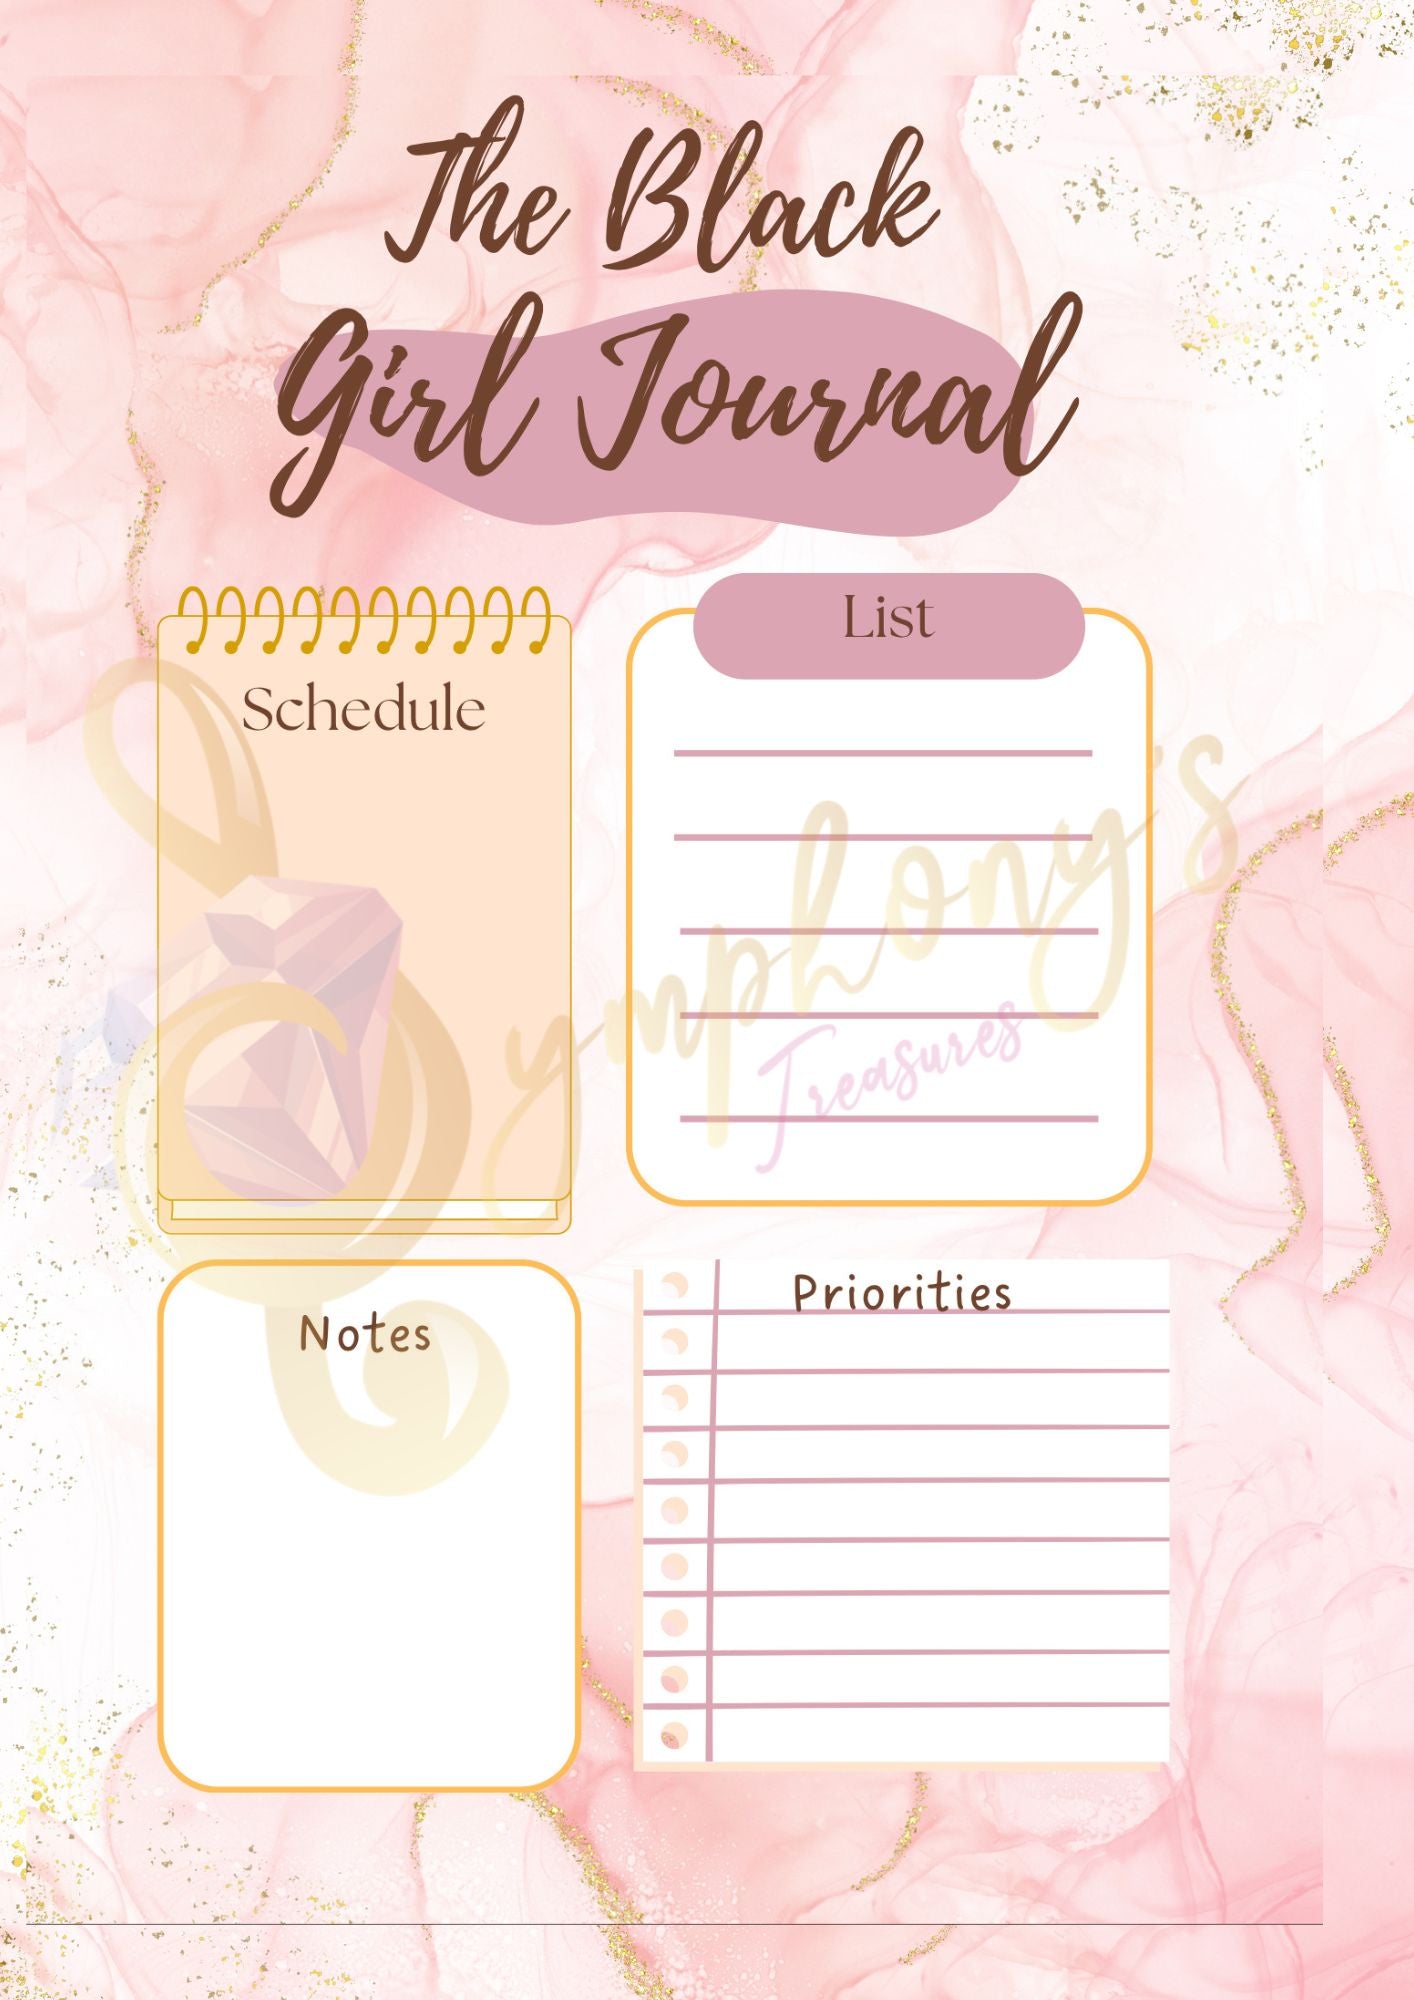 The Black Girl Journal